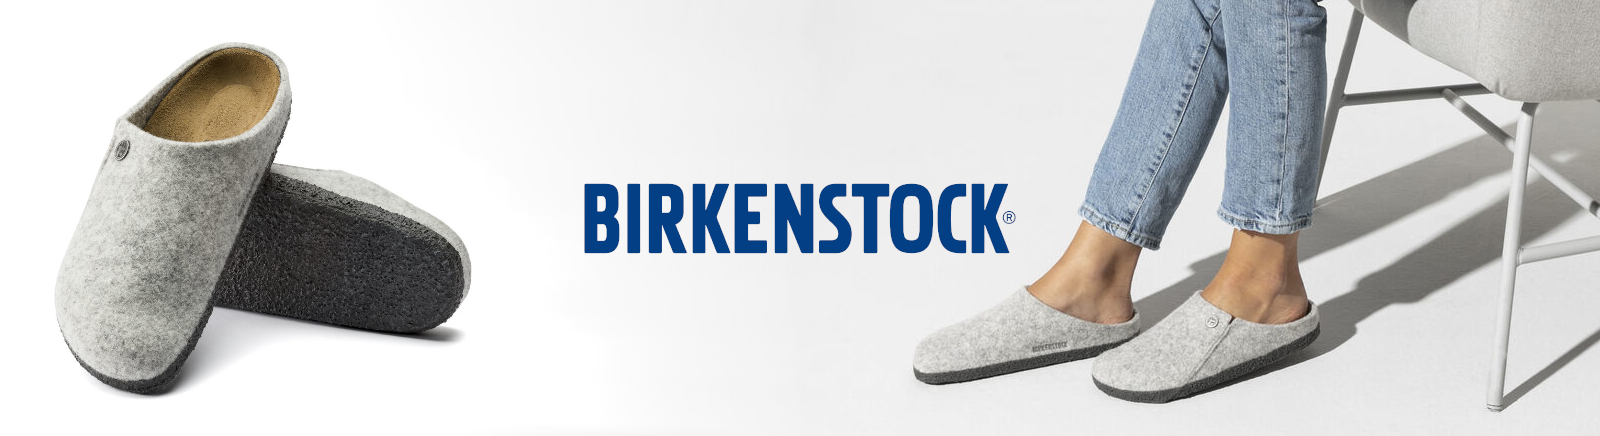 Birkenstock Damenschuhe online kaufen im Shop von GISY